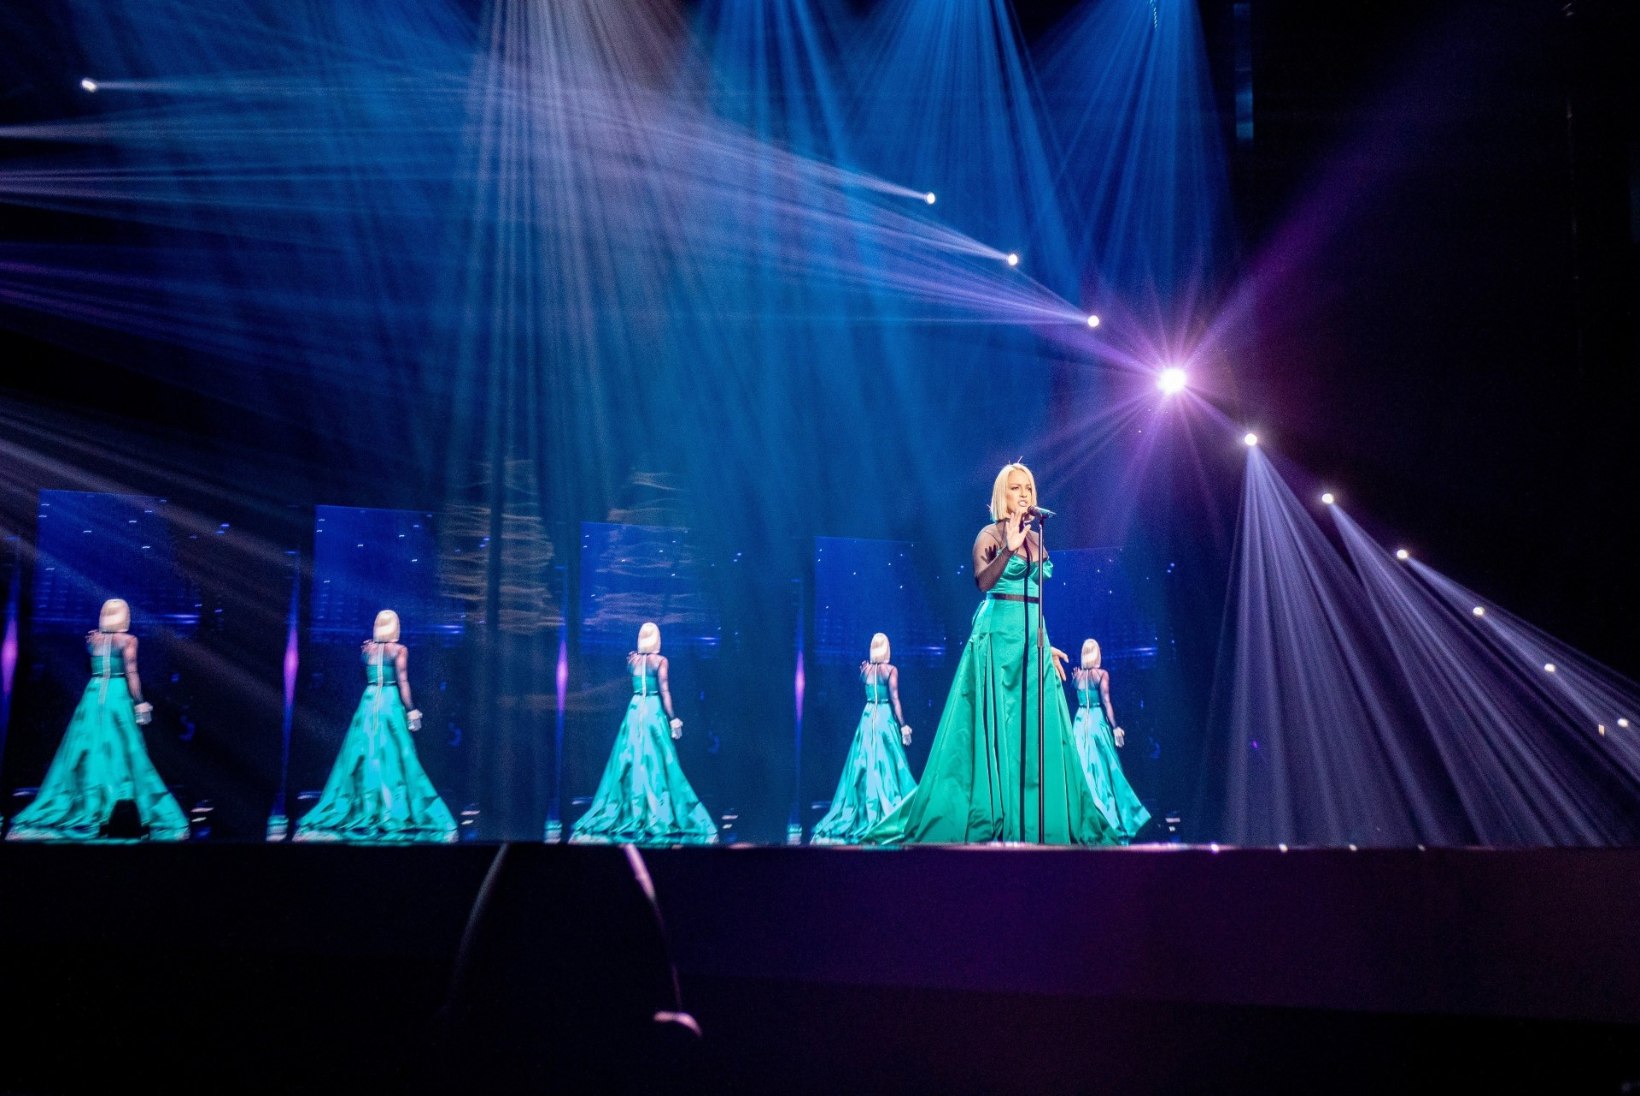 Leia kolm erinevust: Venemaa ja Põhja-Makedoonia Eurovisioni lavakujundused on nagu kaks tilka vett